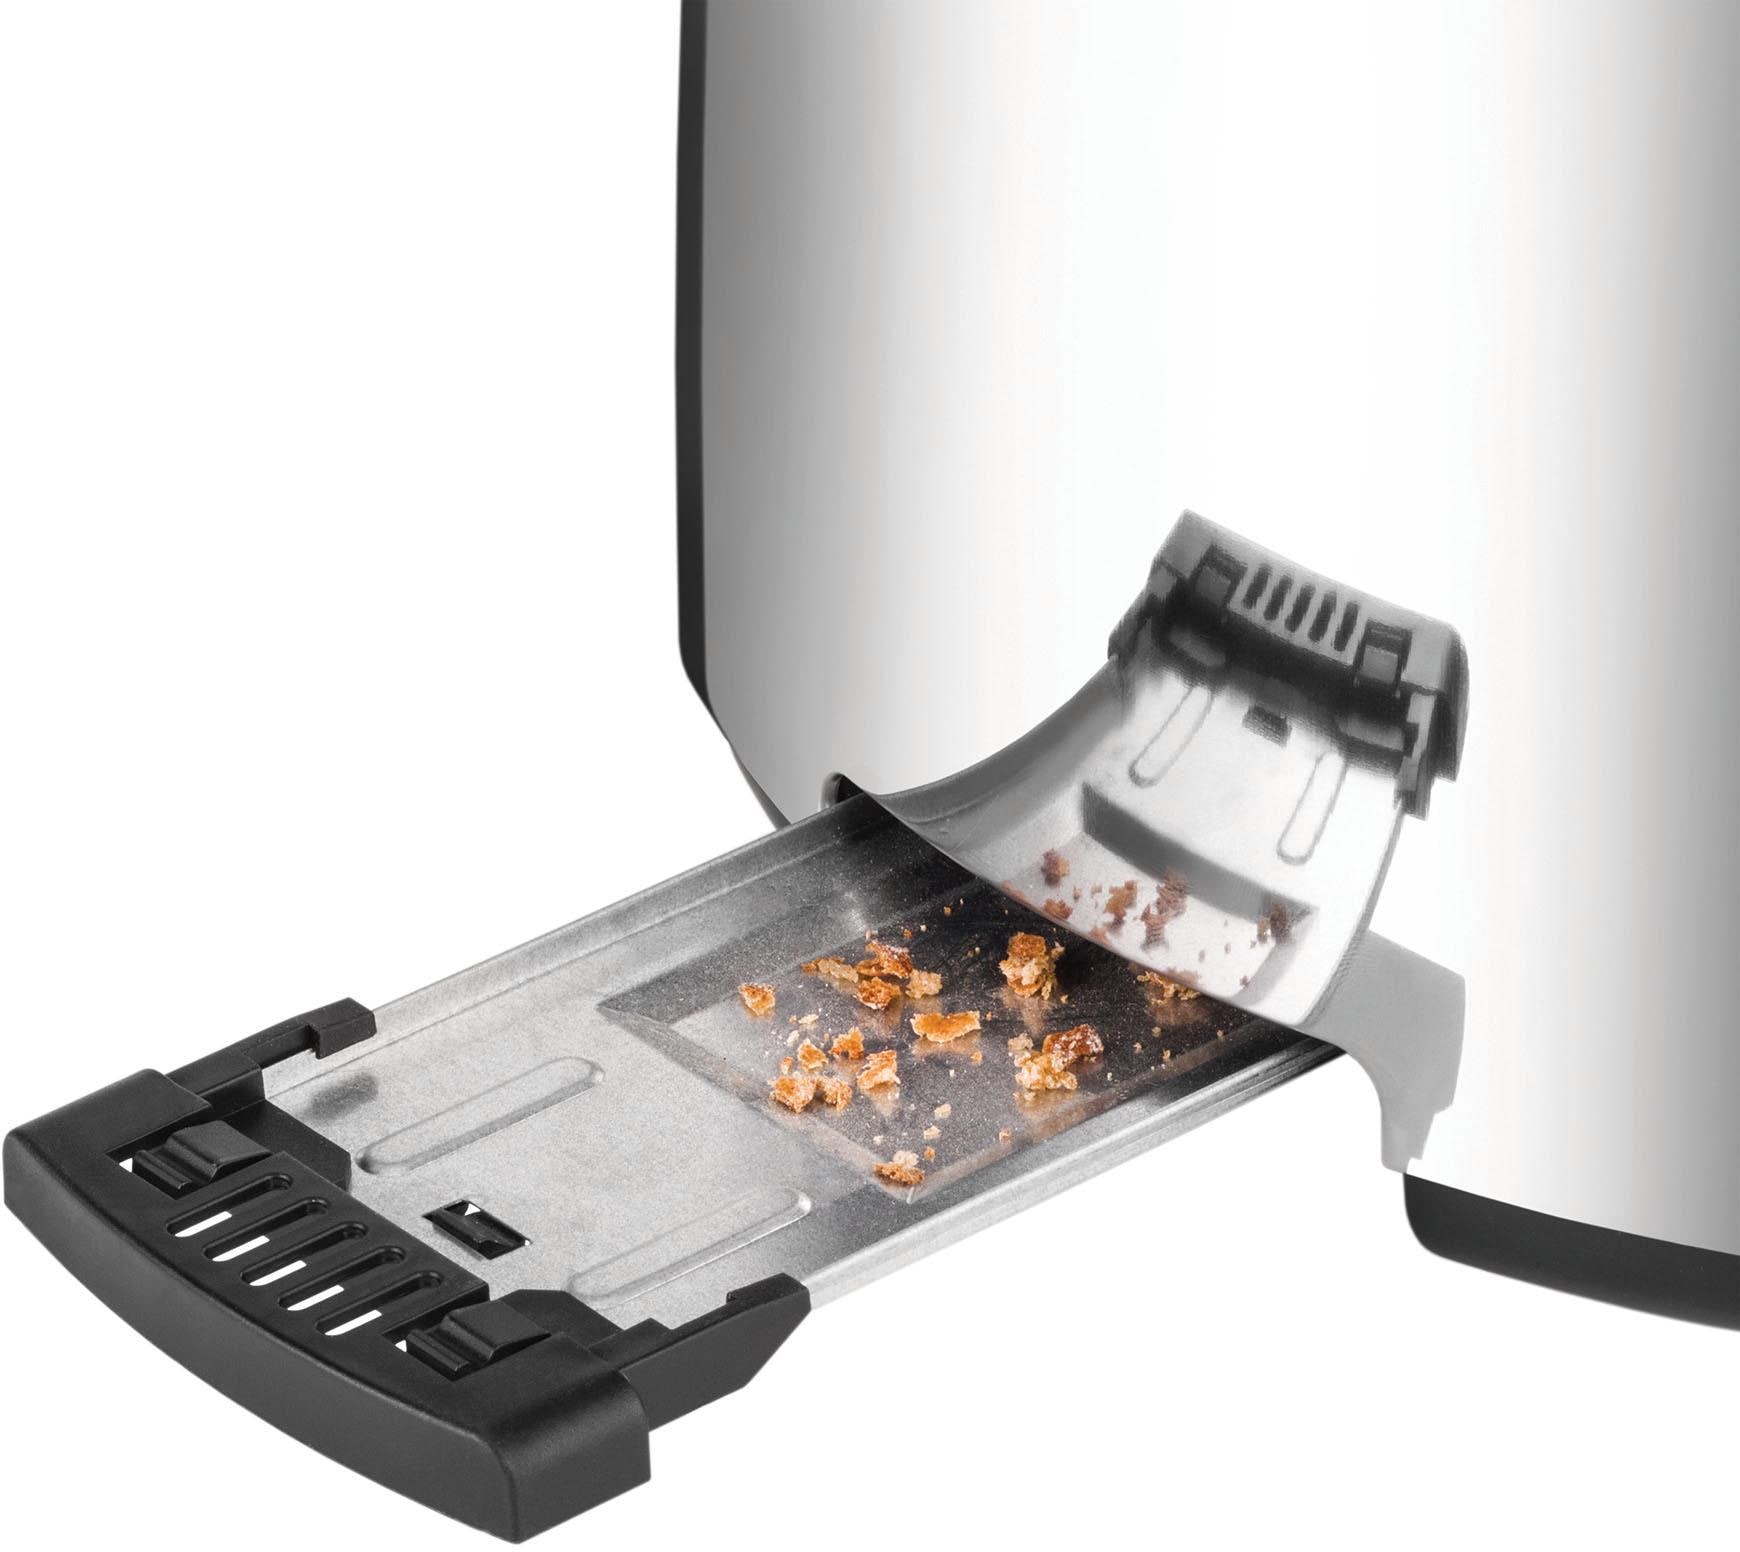 Unold Toaster »4er Retro 38366«, 2 lange Schlitze, 1500 W